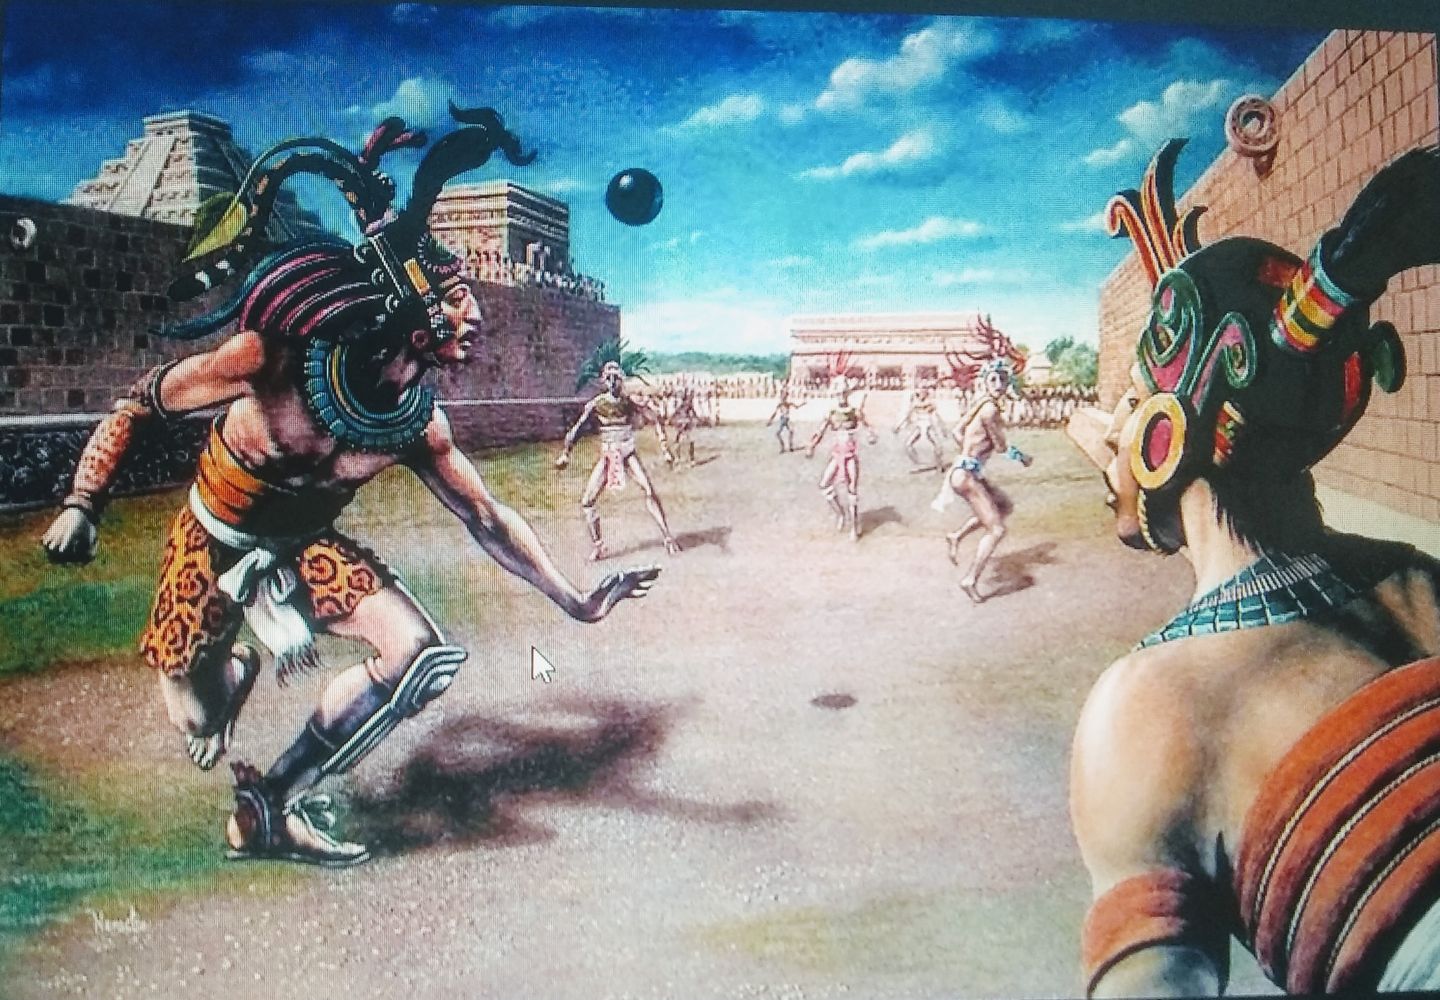 Encuentran en Oaxaca uno de los juegos de pelota más antiguos de México
